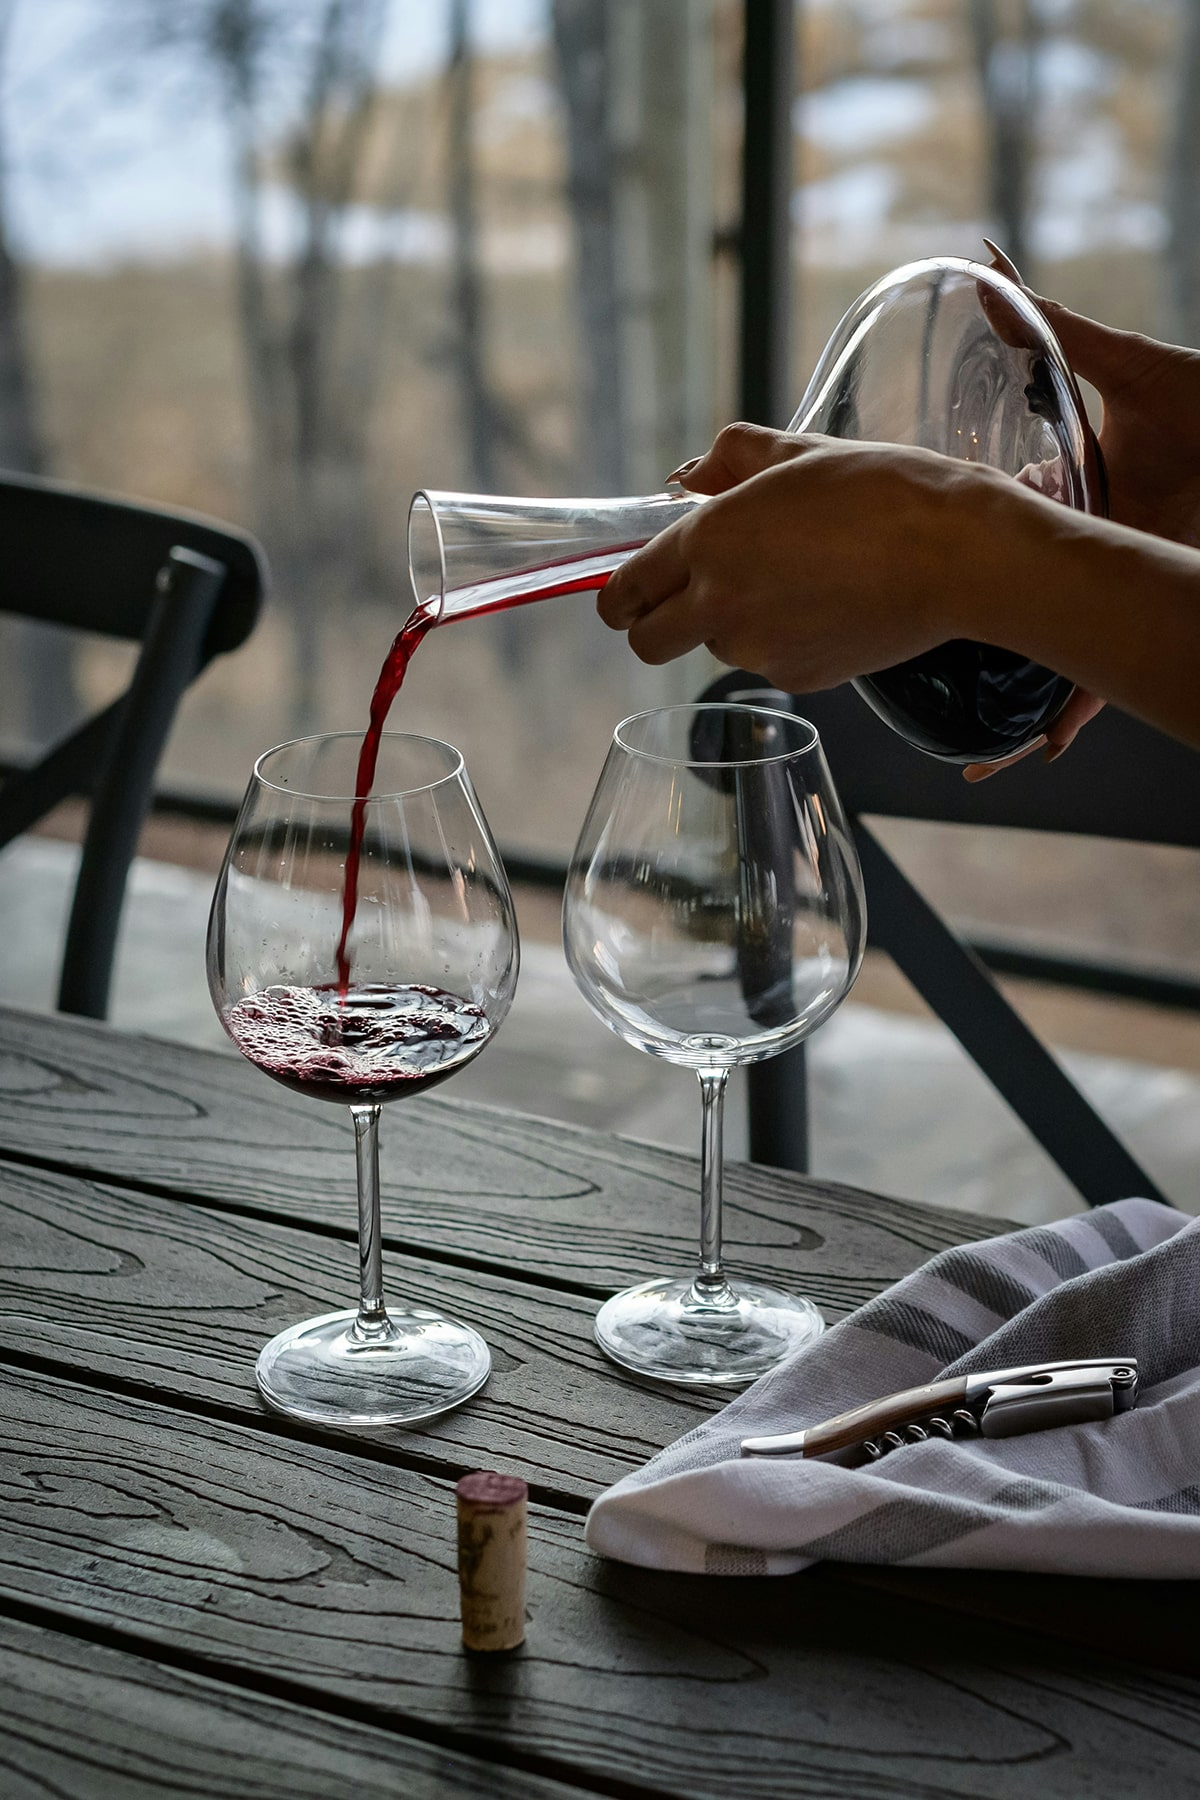 Rode wijn dat ingeschonken wordt door een vrouw op een houten eettafel met vanuit het raam uitzicht op een bos met herfstkleuren